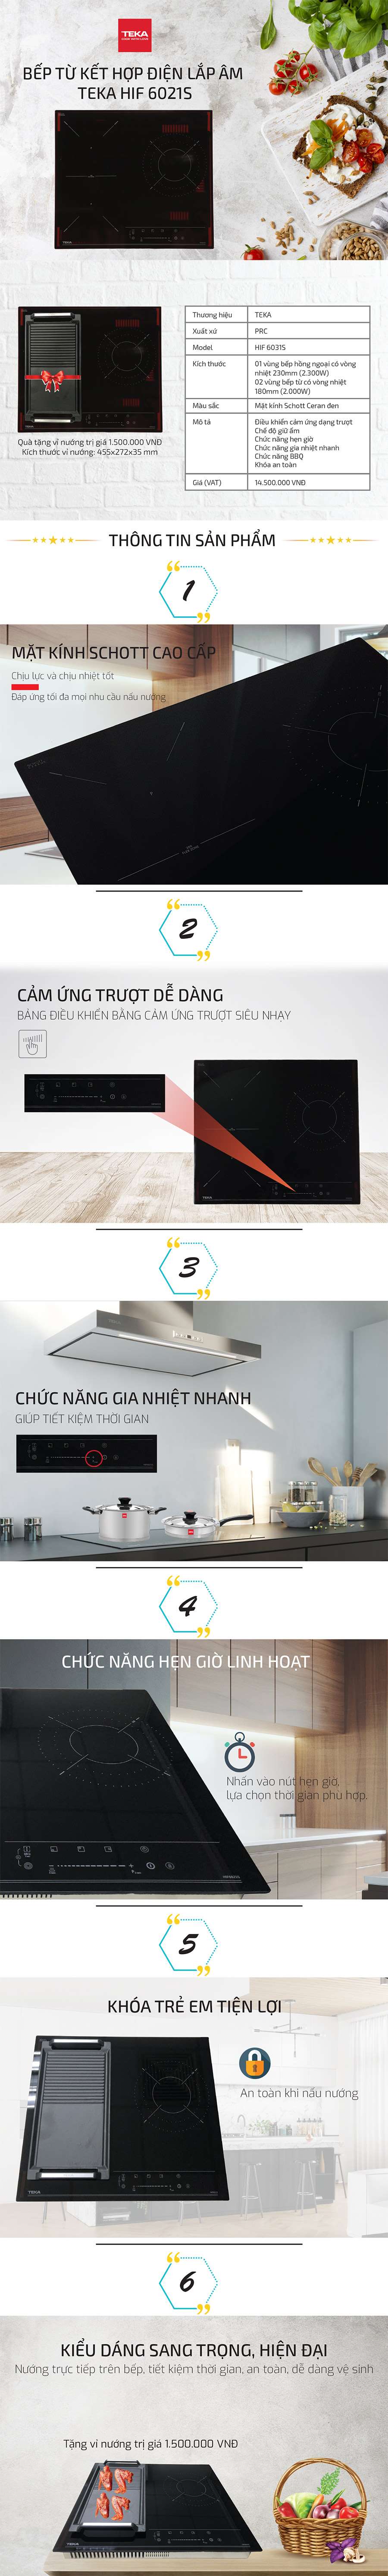 Bếp Âm Đôi Từ - Hồng Ngoại Teka HIF6021S (59 cm) - Hàng Chính Hãng